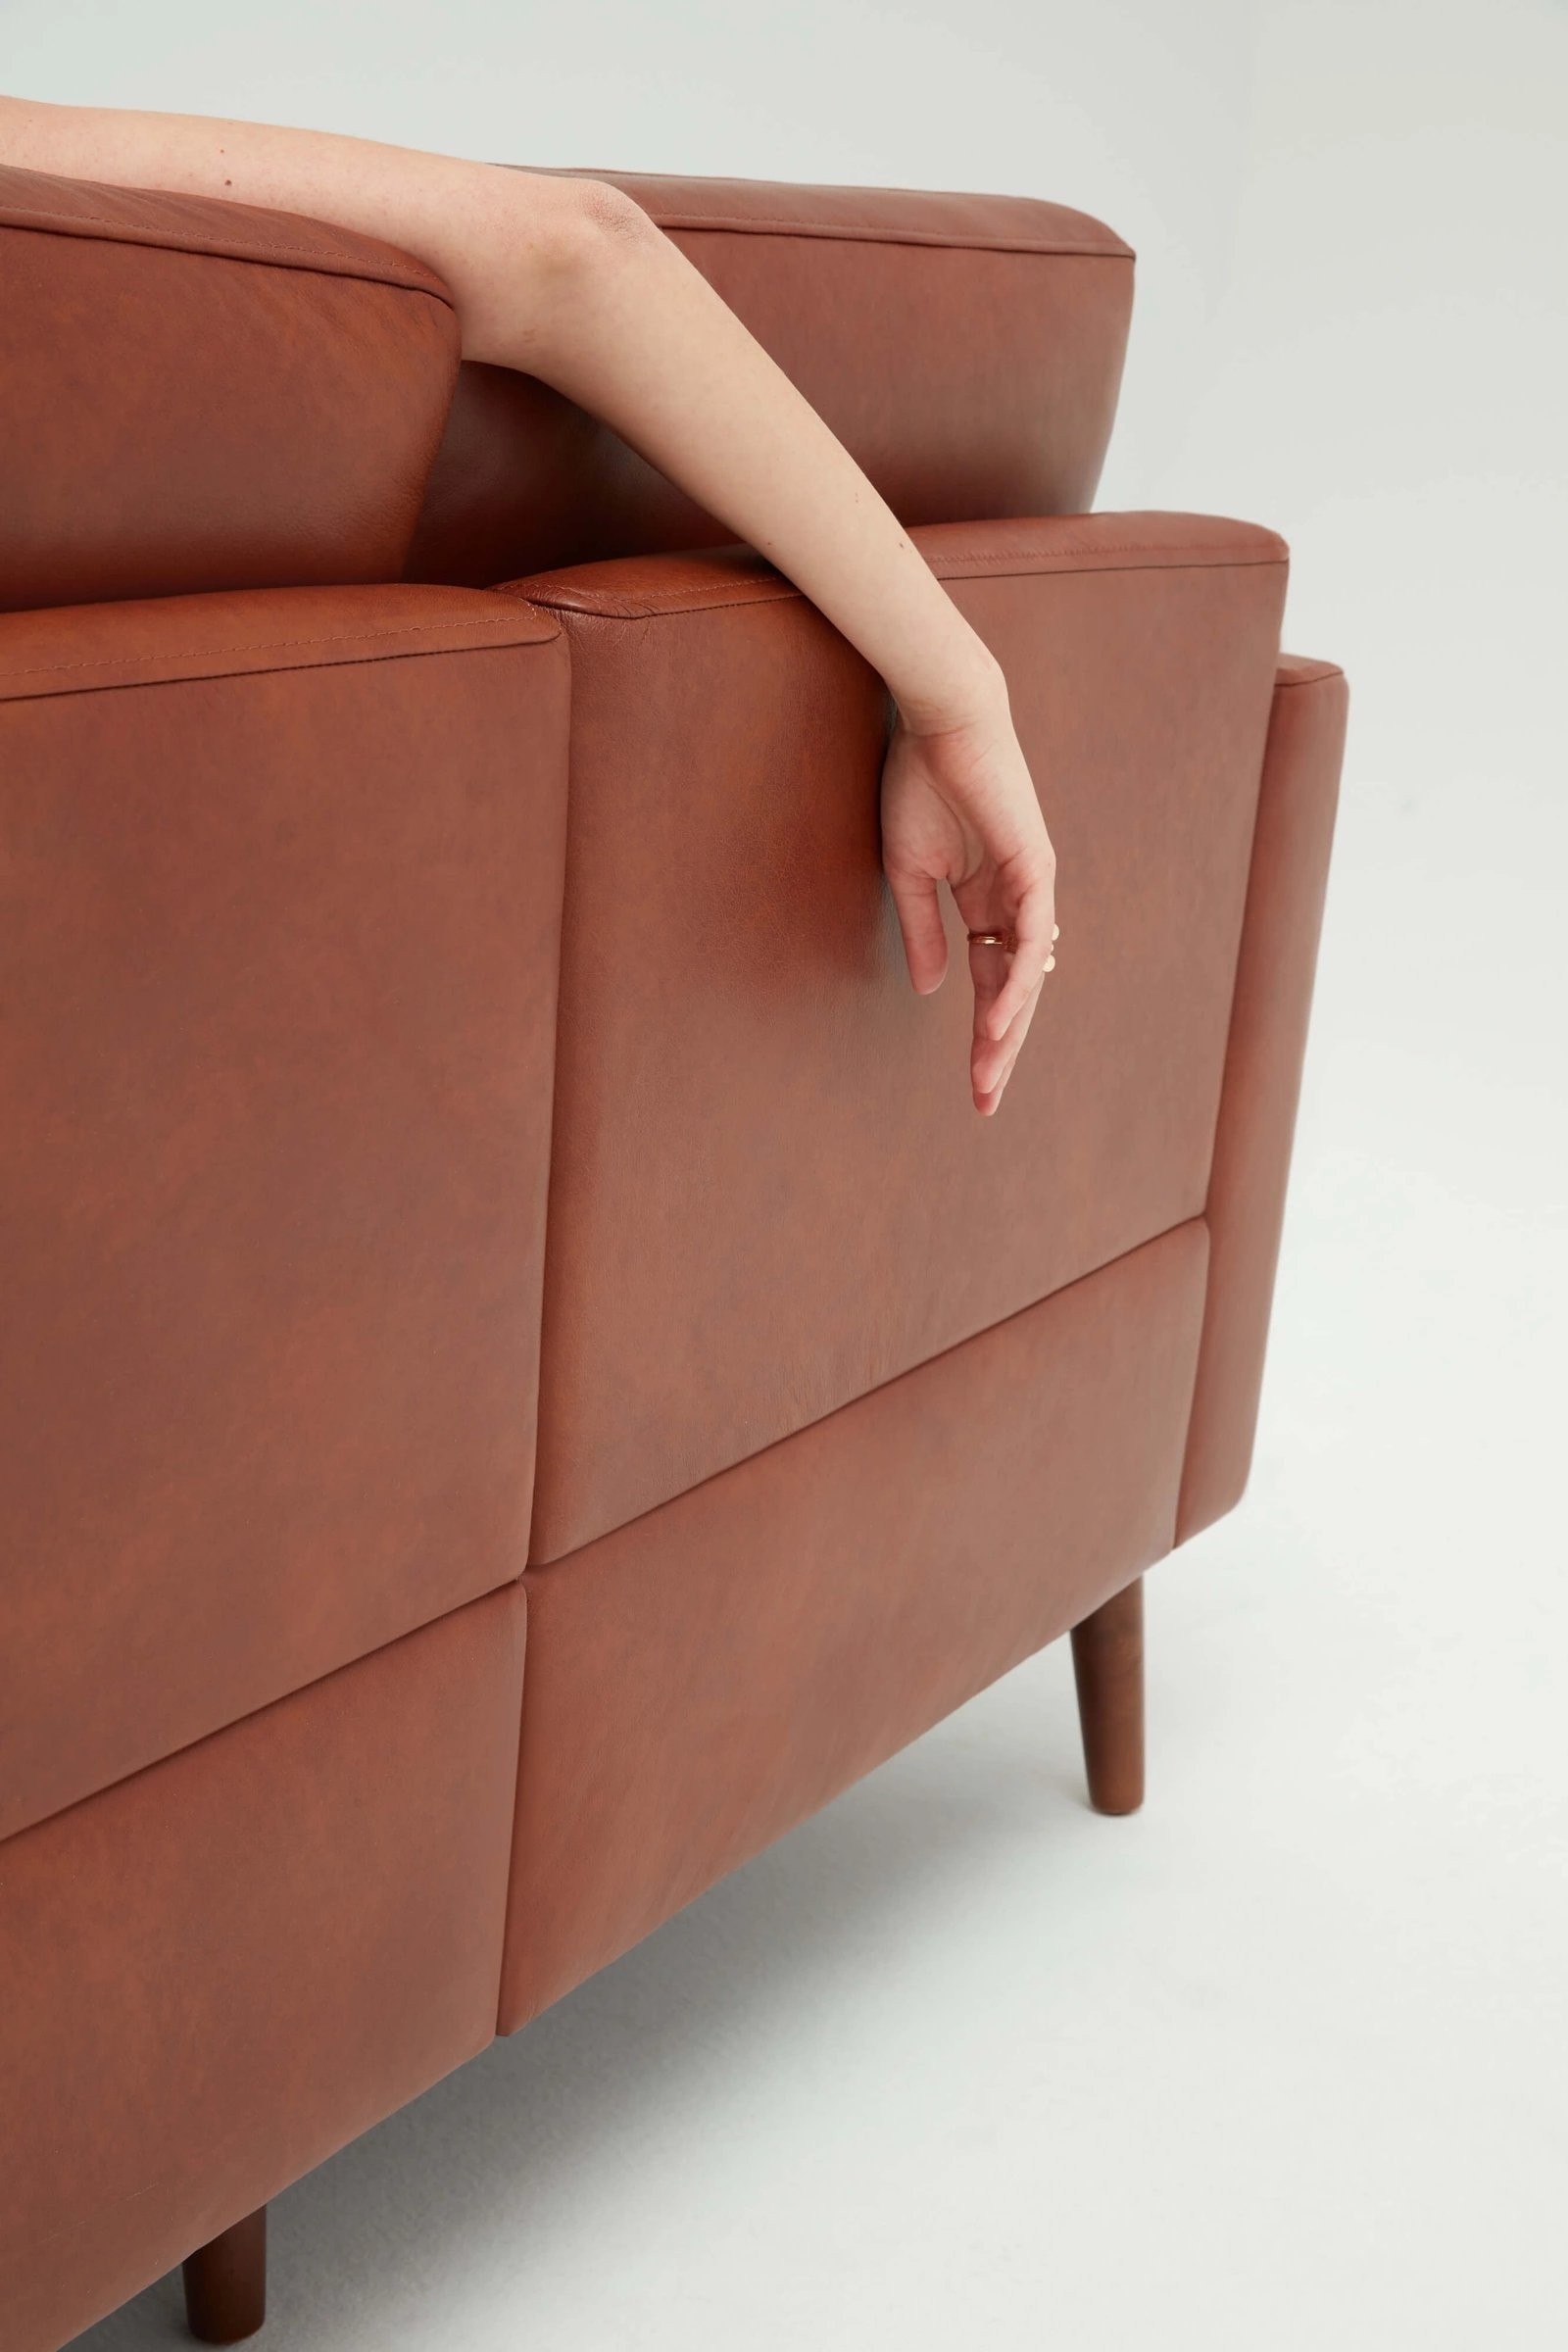 Nomad Leather 6-Seat Corner Sectional // Chestnut-Walnut - Image 3